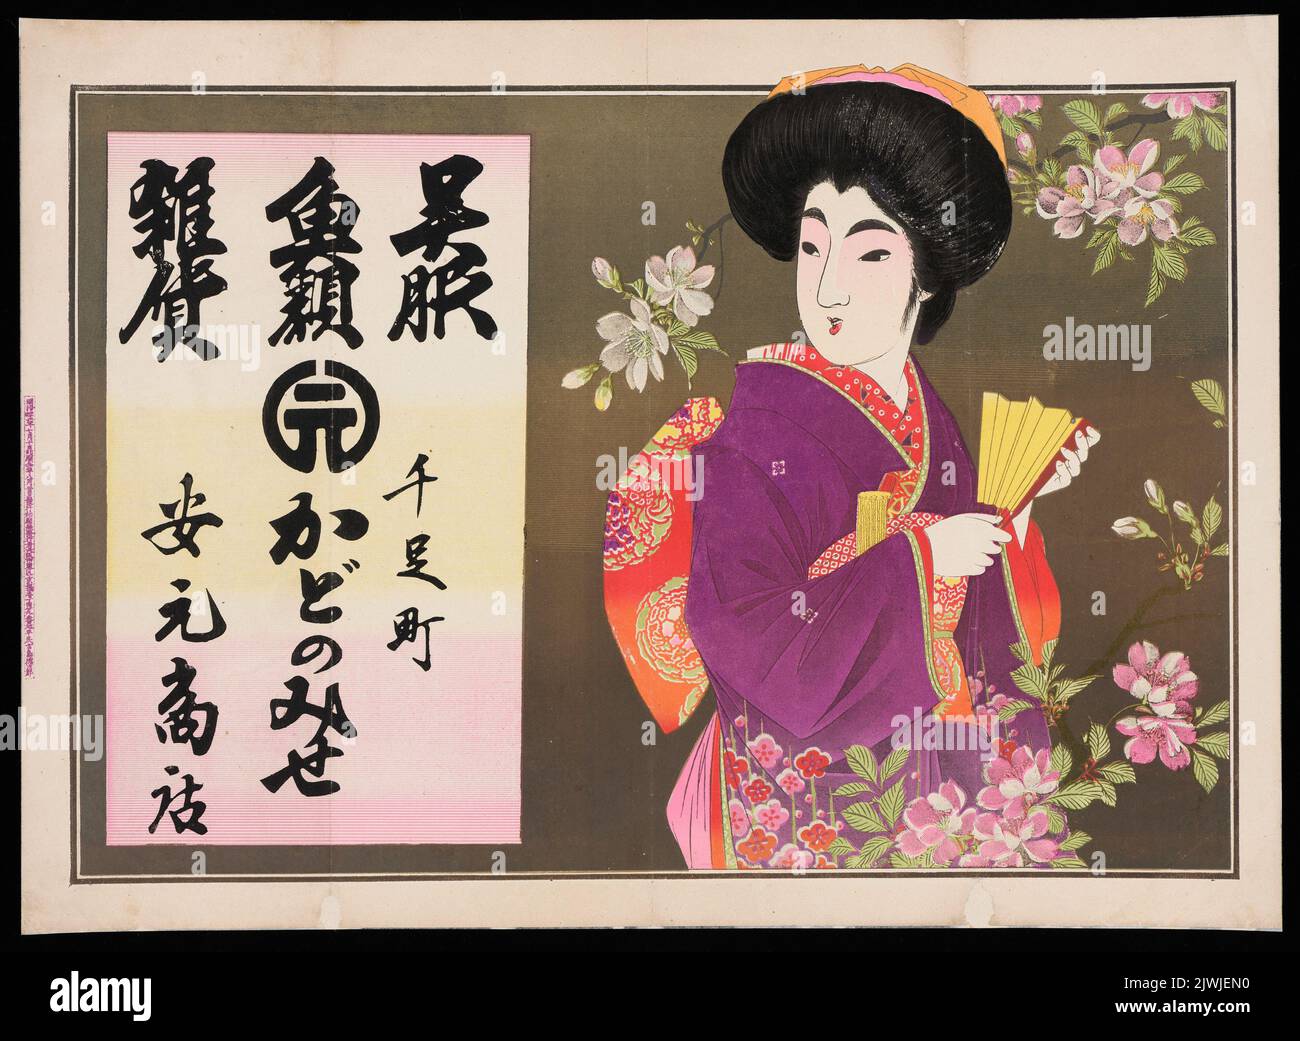 (napisy w języku japońskim) plakat reklamowy (reklama sklepu sprzedającego kimona i ryby, Yasumoto Shoten w Senzoku-cho, Prefektura Aichi). Kojima, Takejiro (?-?), author Stock Photo